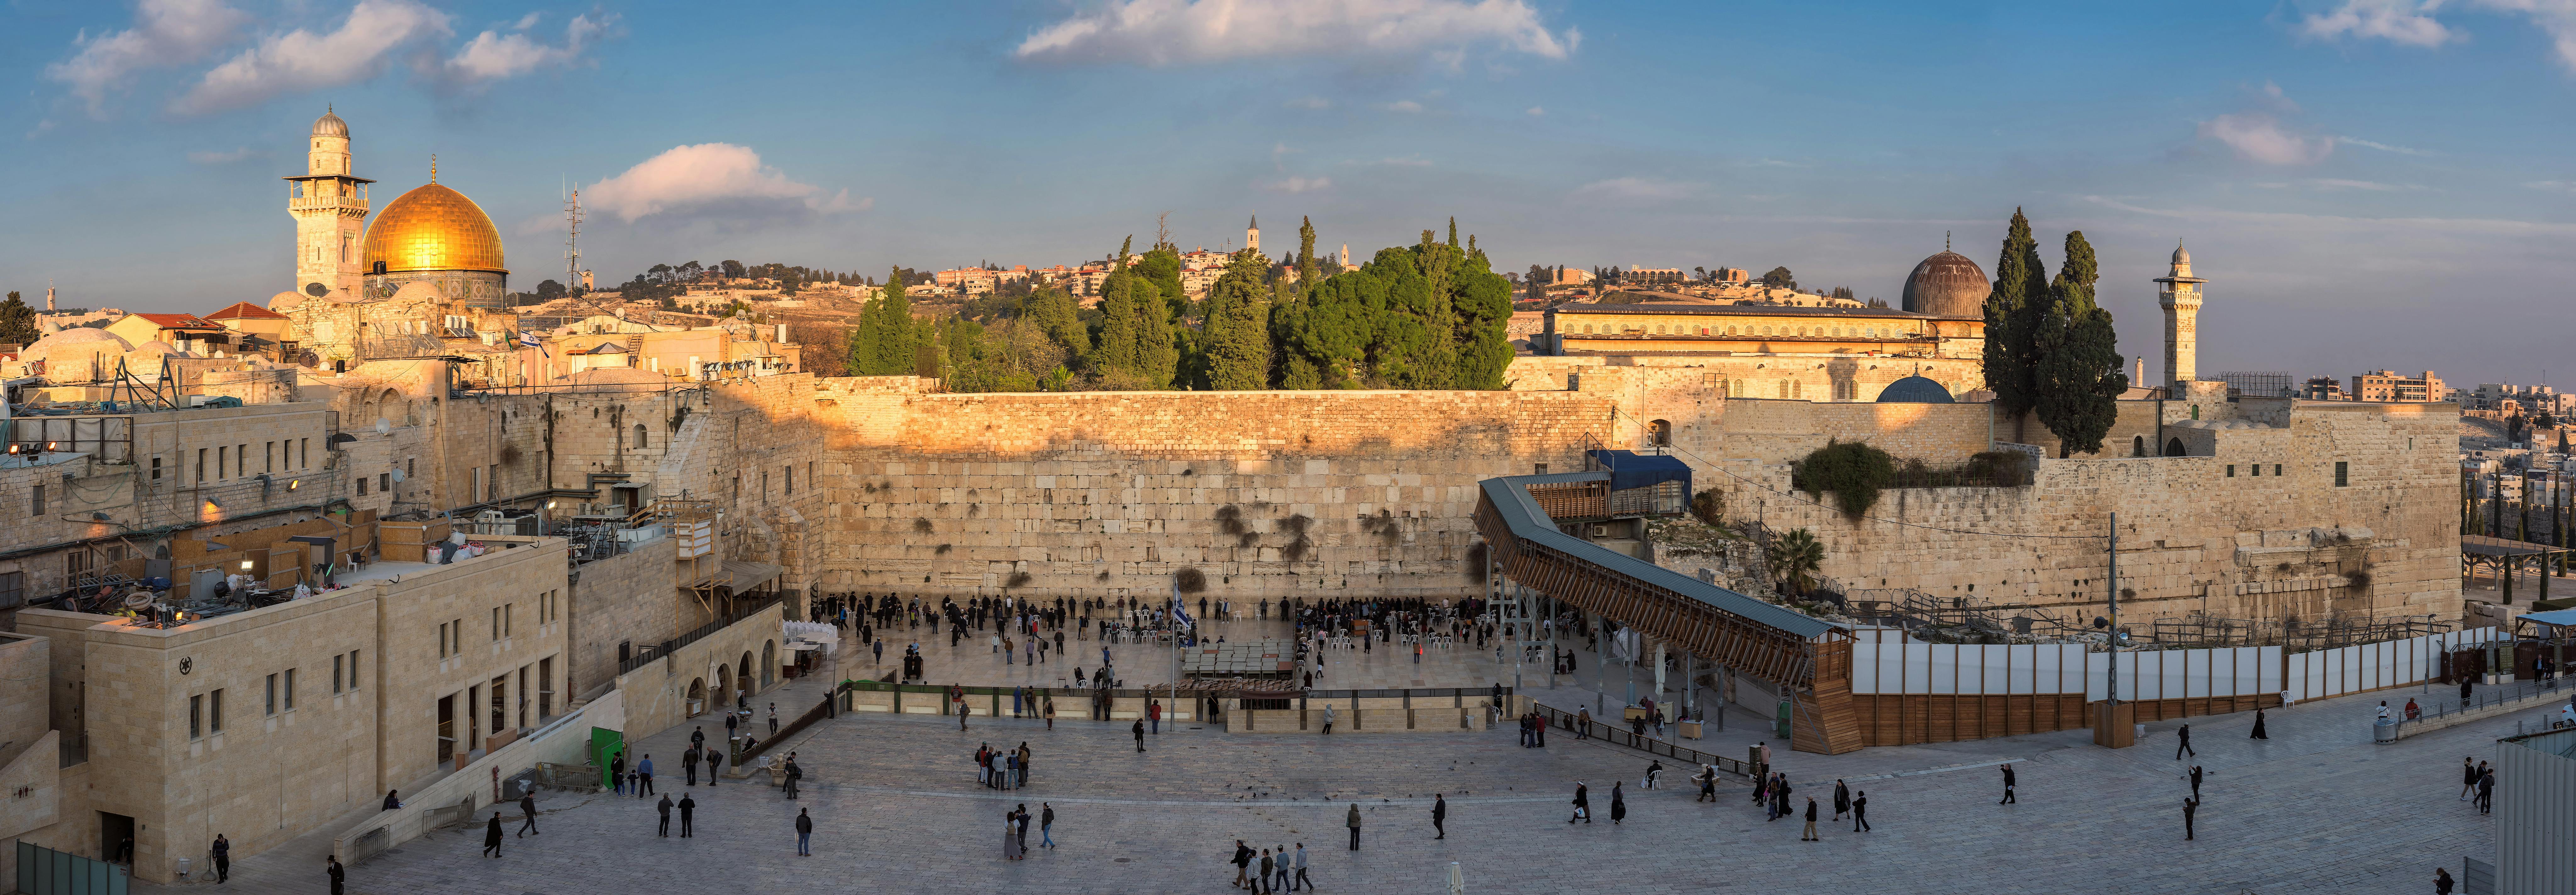 Historic and modern Jerusalem full-day tour from Tel-Aviv